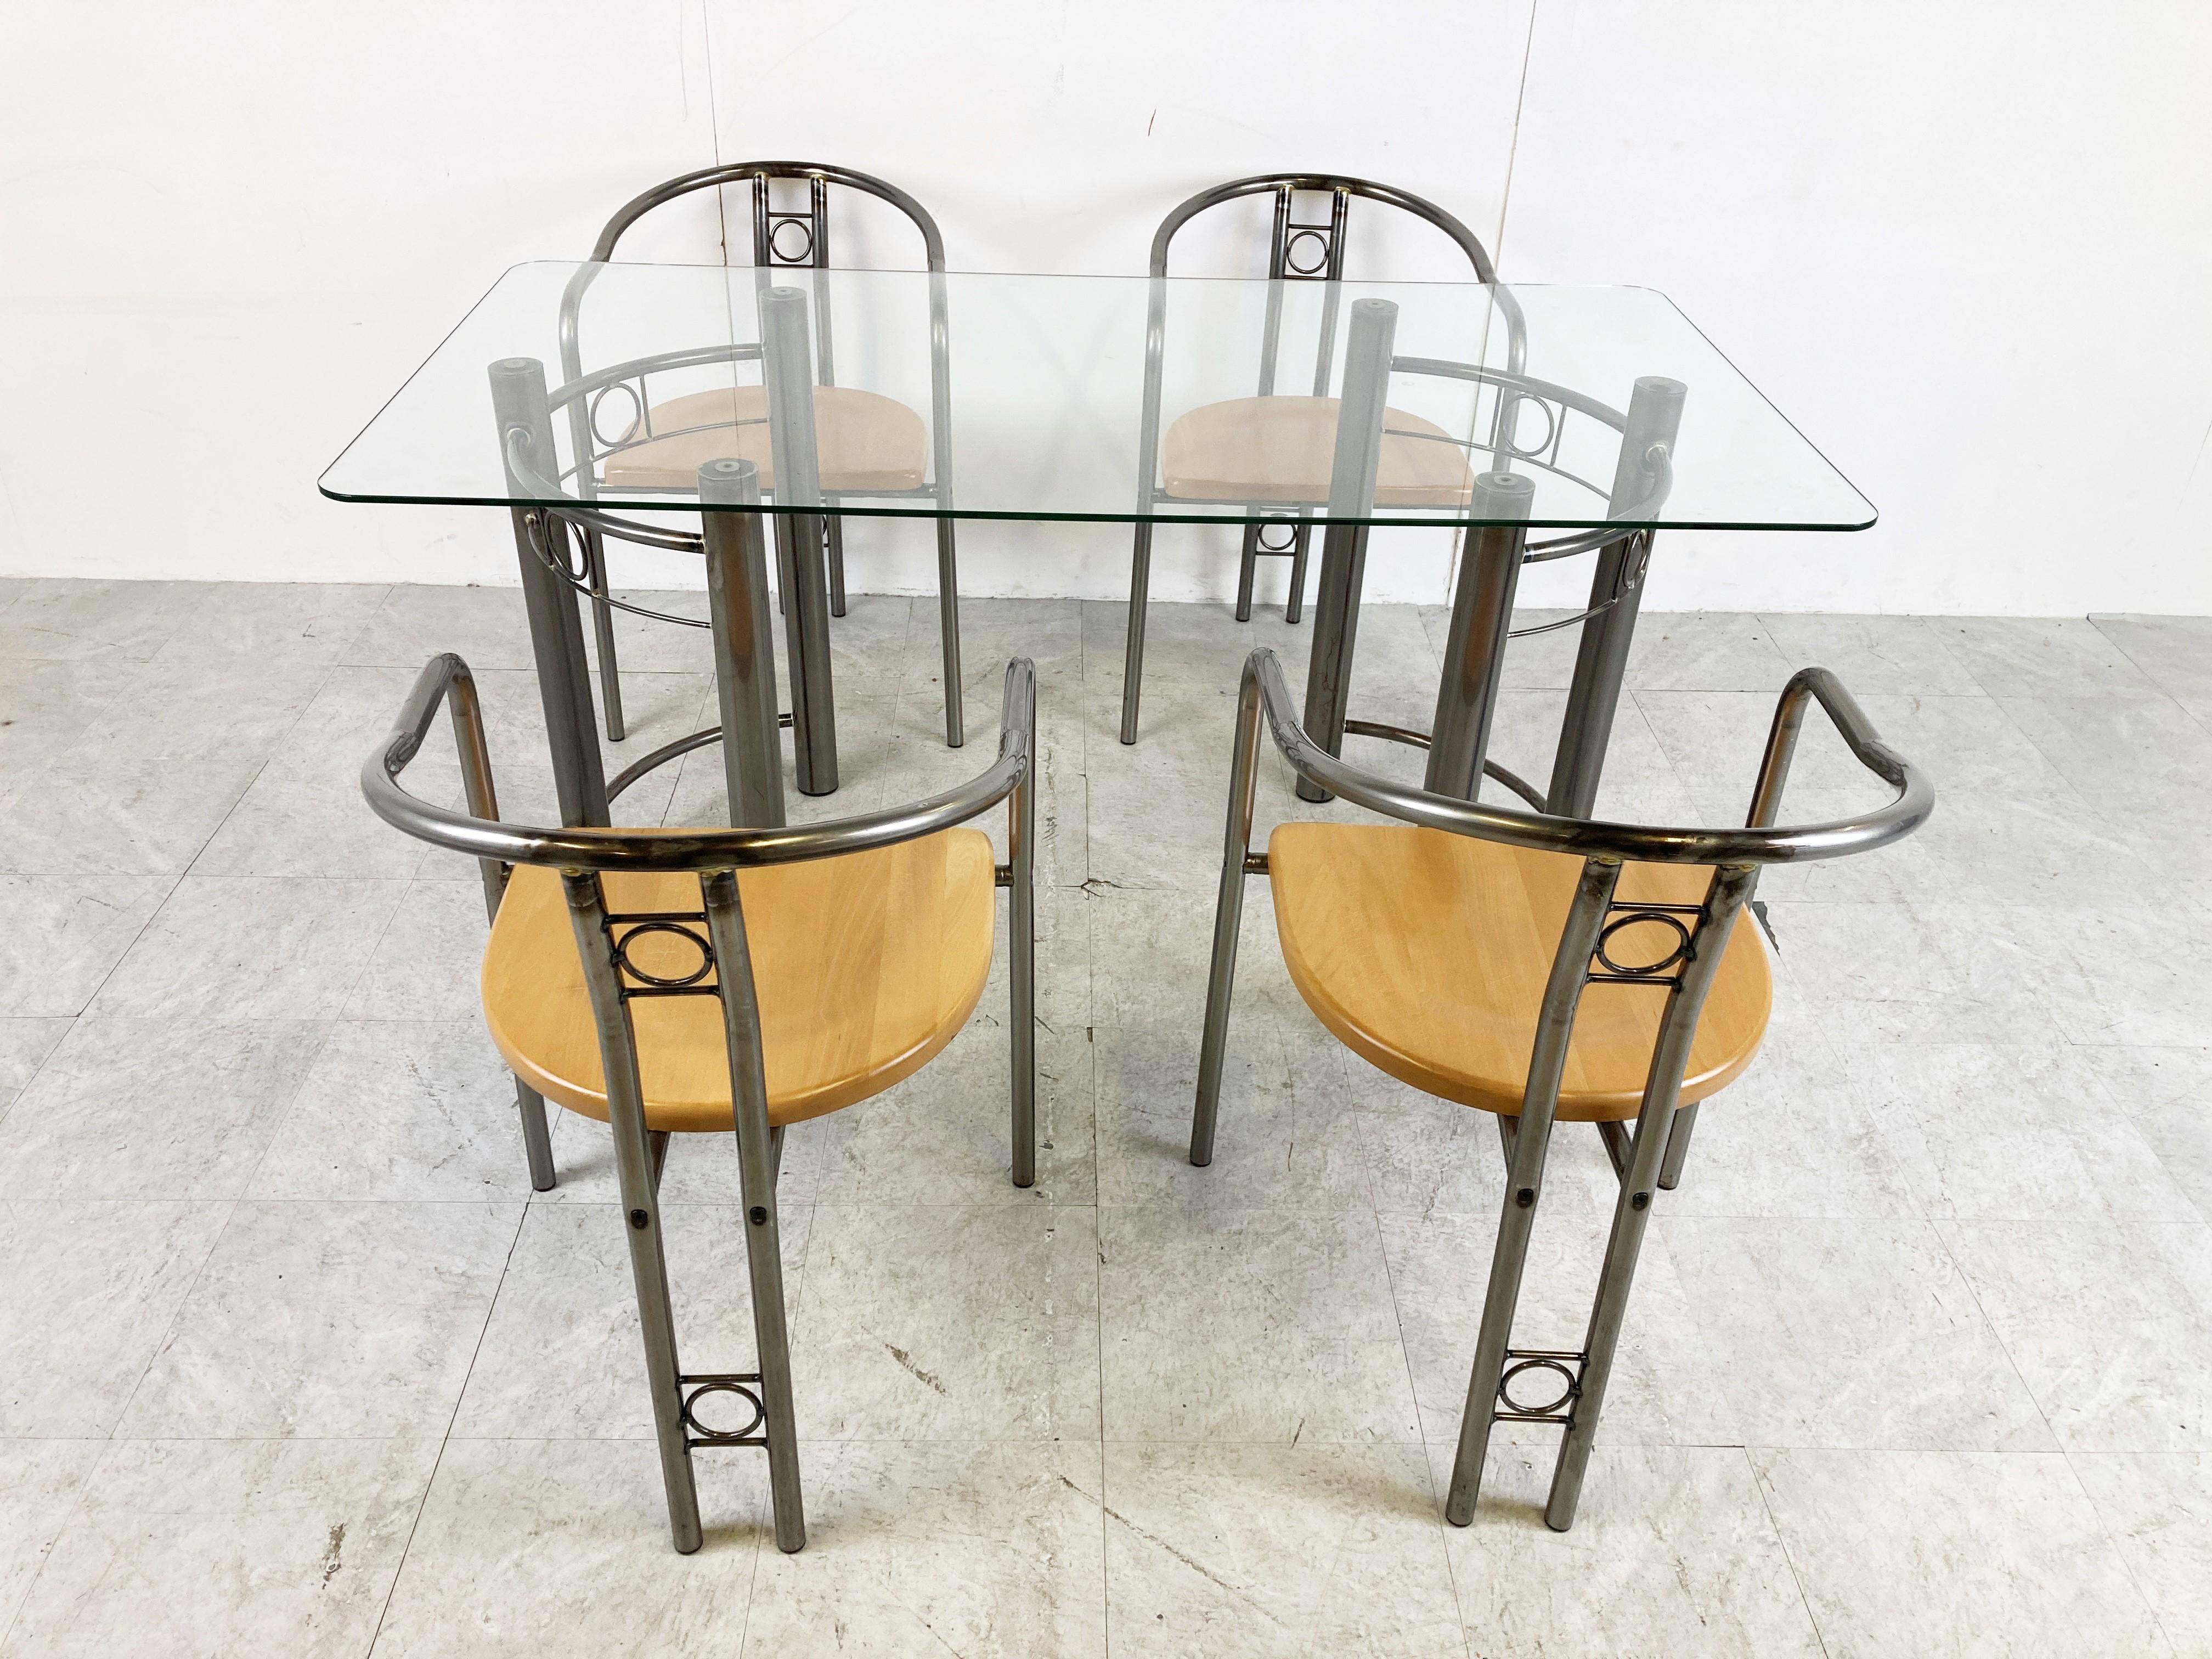 Maßgefertigte Vintage-Esszimmerstühle mit Armlehnen und ein Esstisch mit einer klaren Glasplatte.

Die Stühle haben eine Holzsitzfläche.

Wunderschön gefertigte, postmoderne Essgarnitur

1980er Jahre - Belgien

Guter